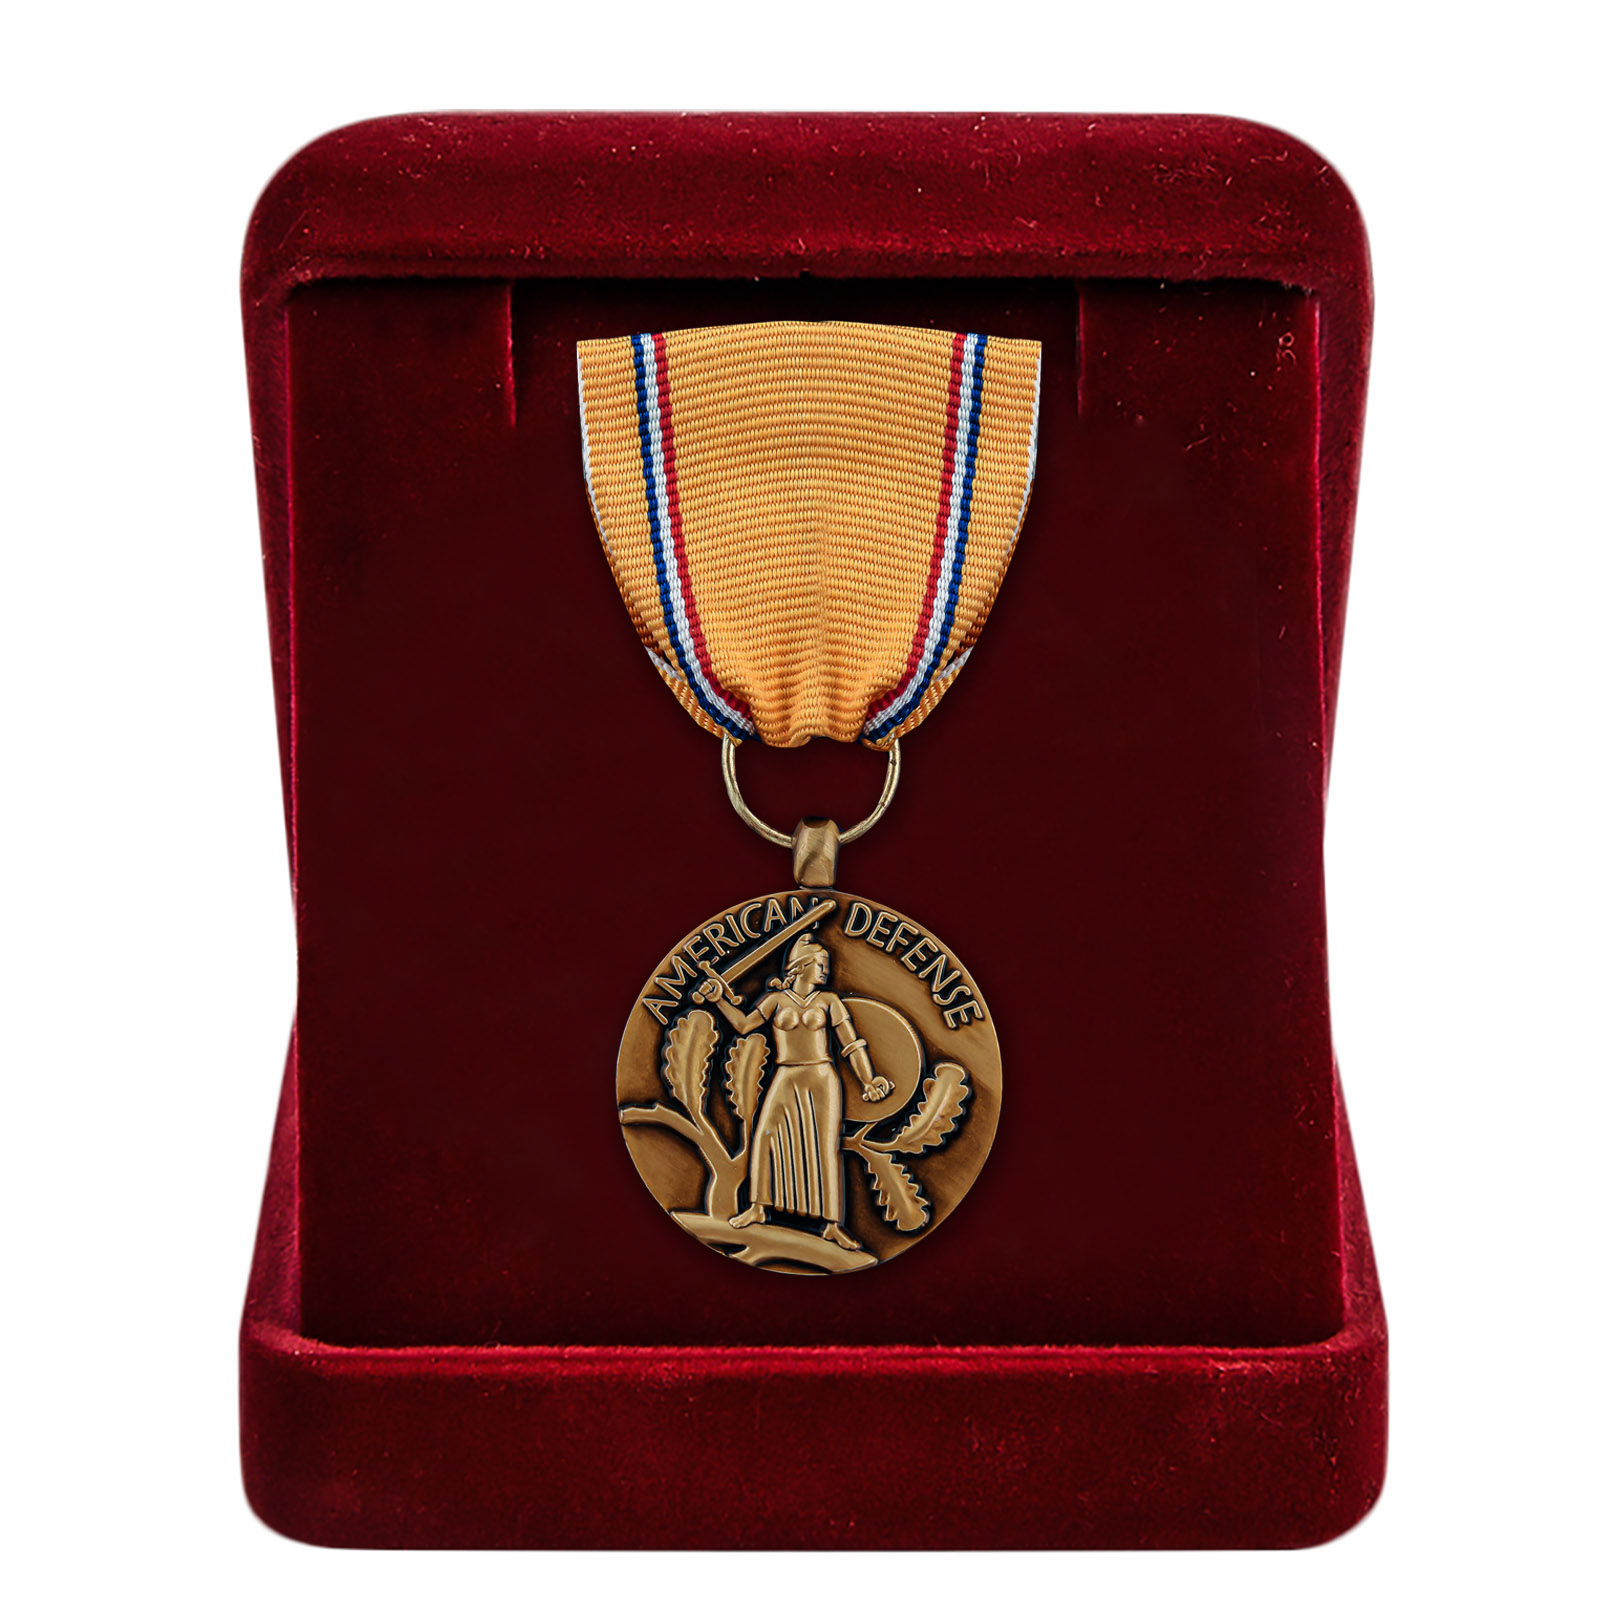 Купить медаль "За оборону Америки" в бархатистом футляре